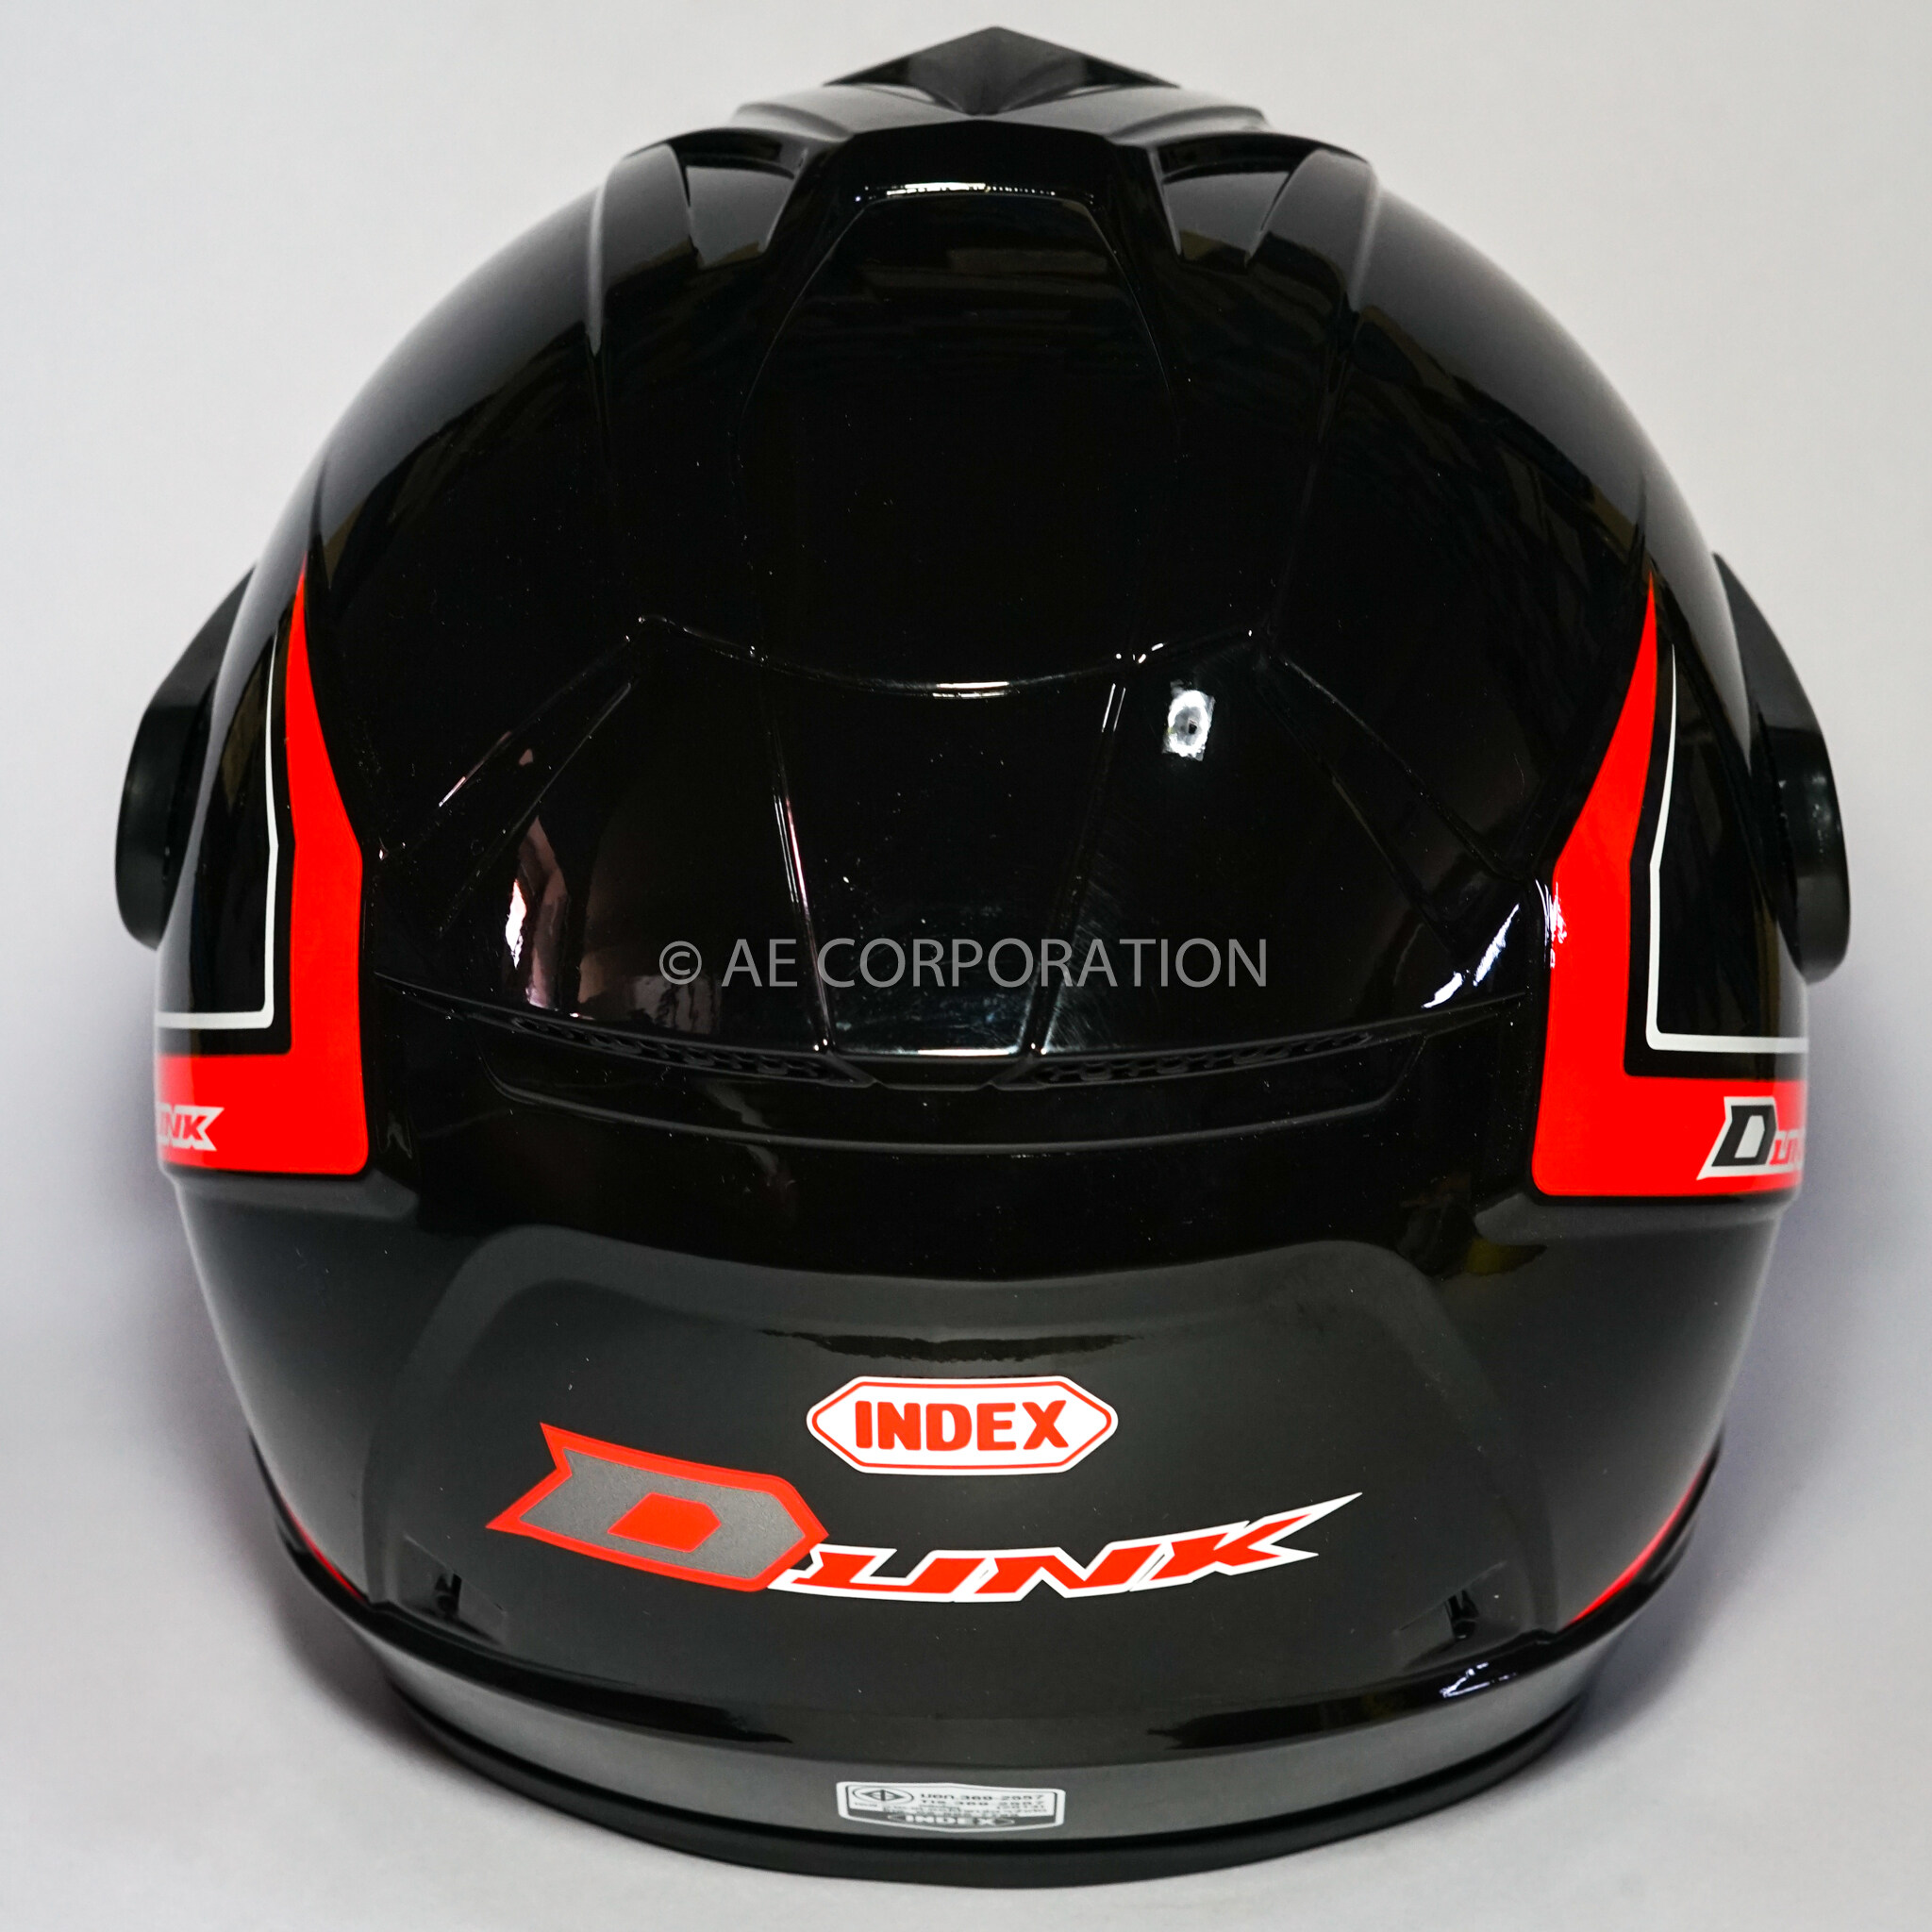 ภาพที่ให้รายละเอียดเกี่ยวกับ หมวกกันน็อค INDEX DUNK NEW หมวกกันน็อค ของแท้100% ไซต์L สีดำเงา 300IQ Racing